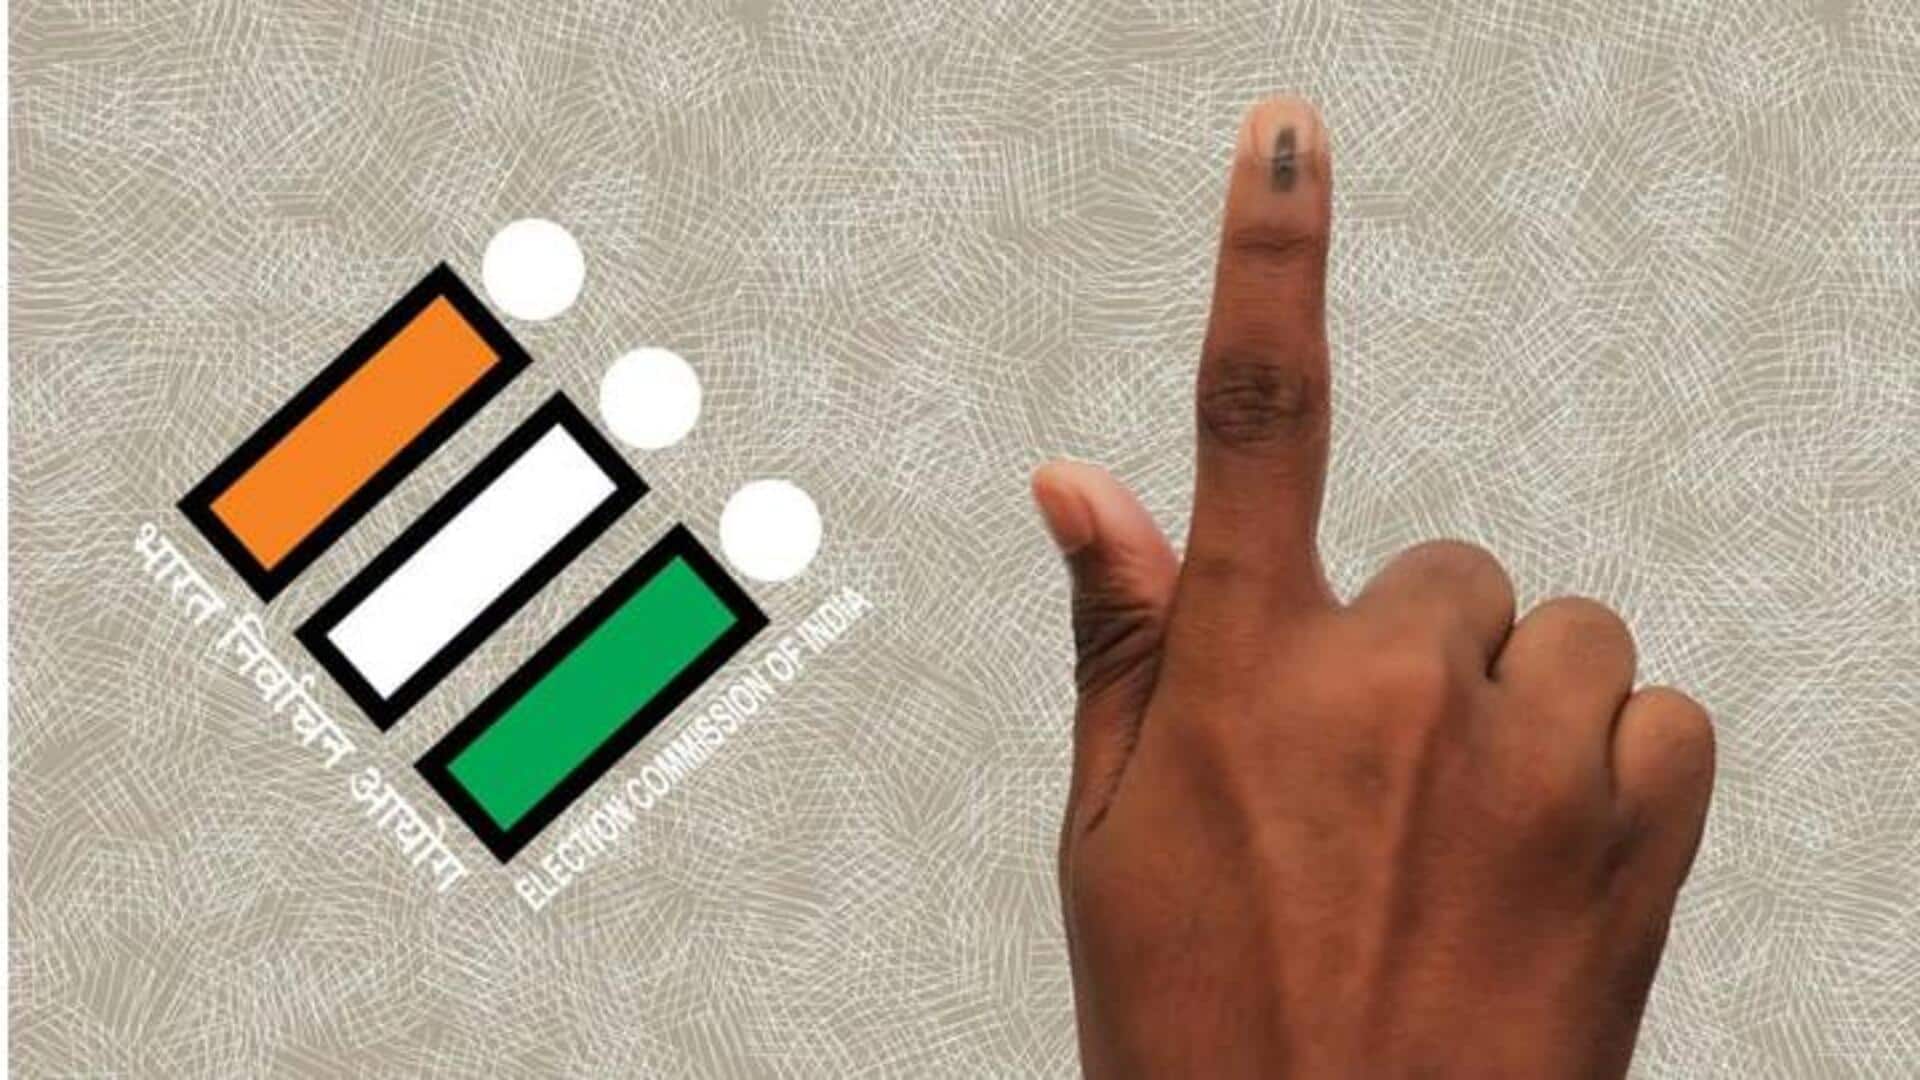 Telangana polls: తెలంగాణలో 100కంటే తక్కువ ఓటర్లు ఉన్న పోలింగ్ కేంద్రాలు ఇవే